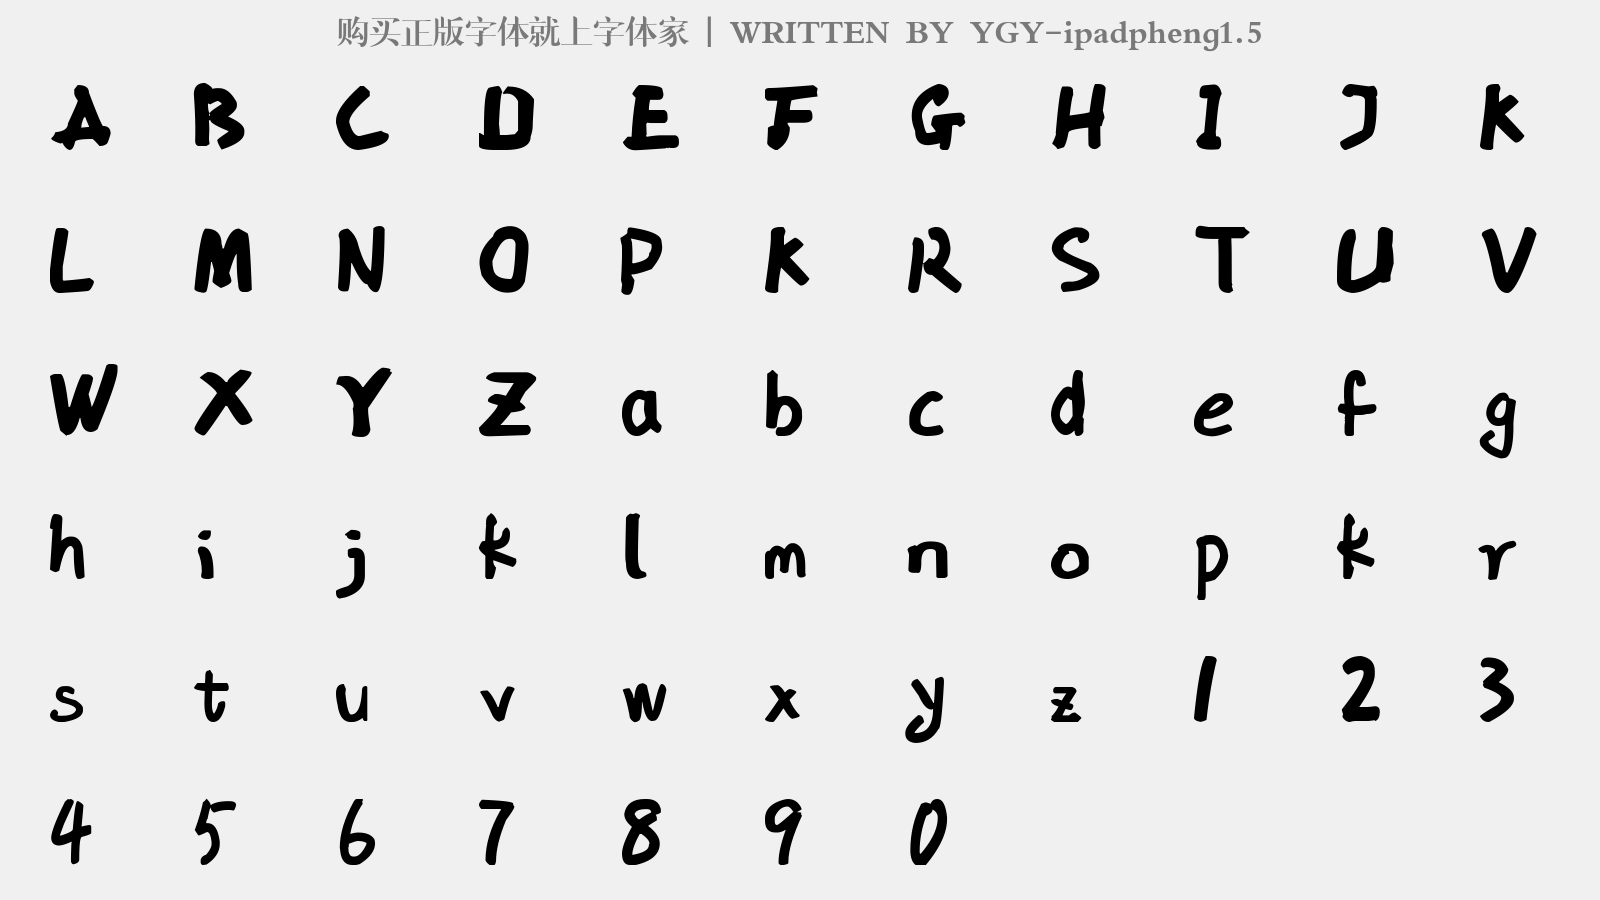 YGY-ipadpheng1.5 - 大写字母/小写字母/数字